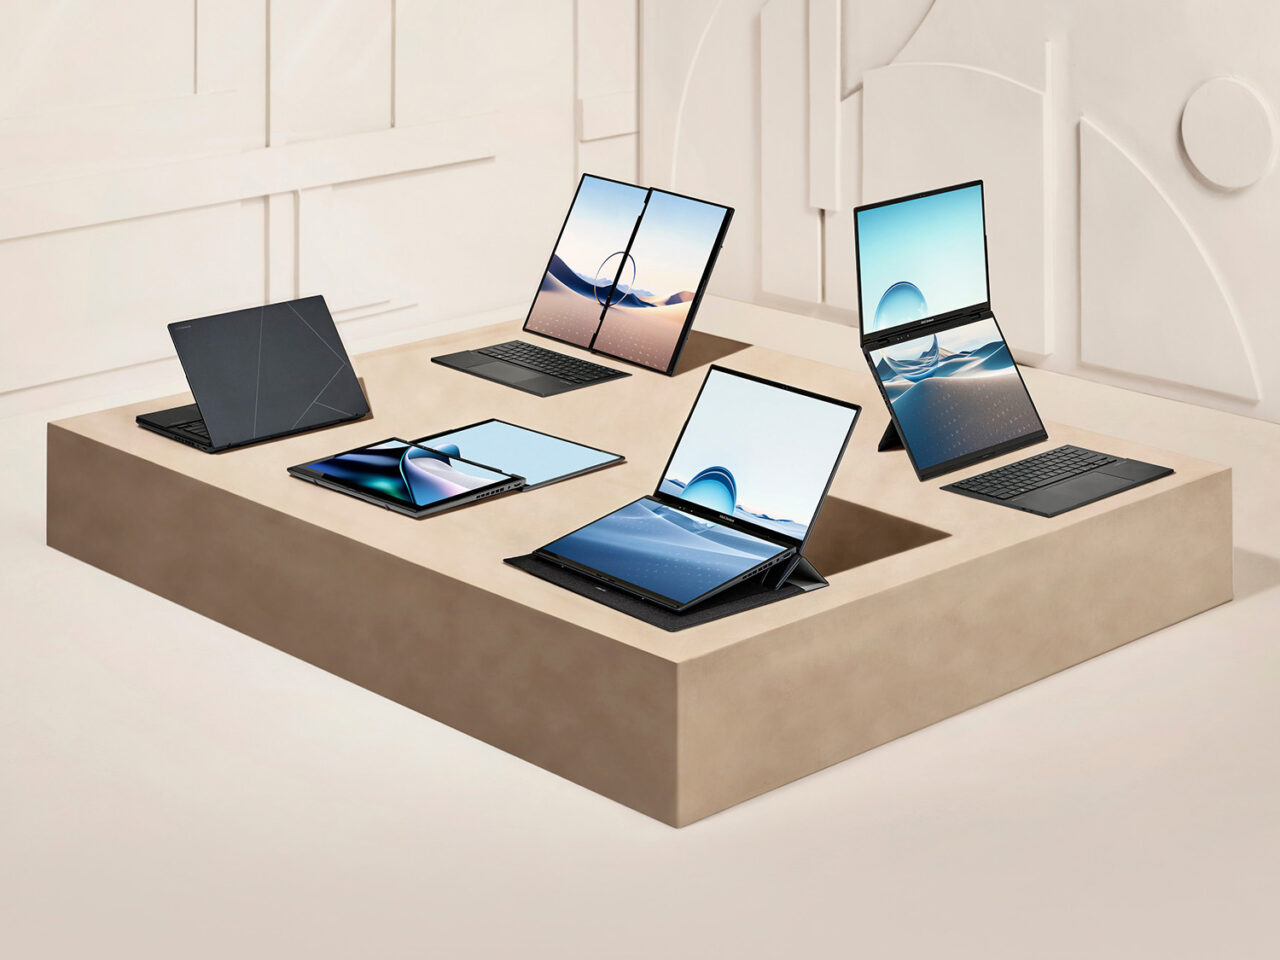 Kolekcja nowoczesnych laptopów Asus Zenbook Duo prezentowanych na stylowym, beżowym podium w minimalistycznie urządzonym wnętrzu.